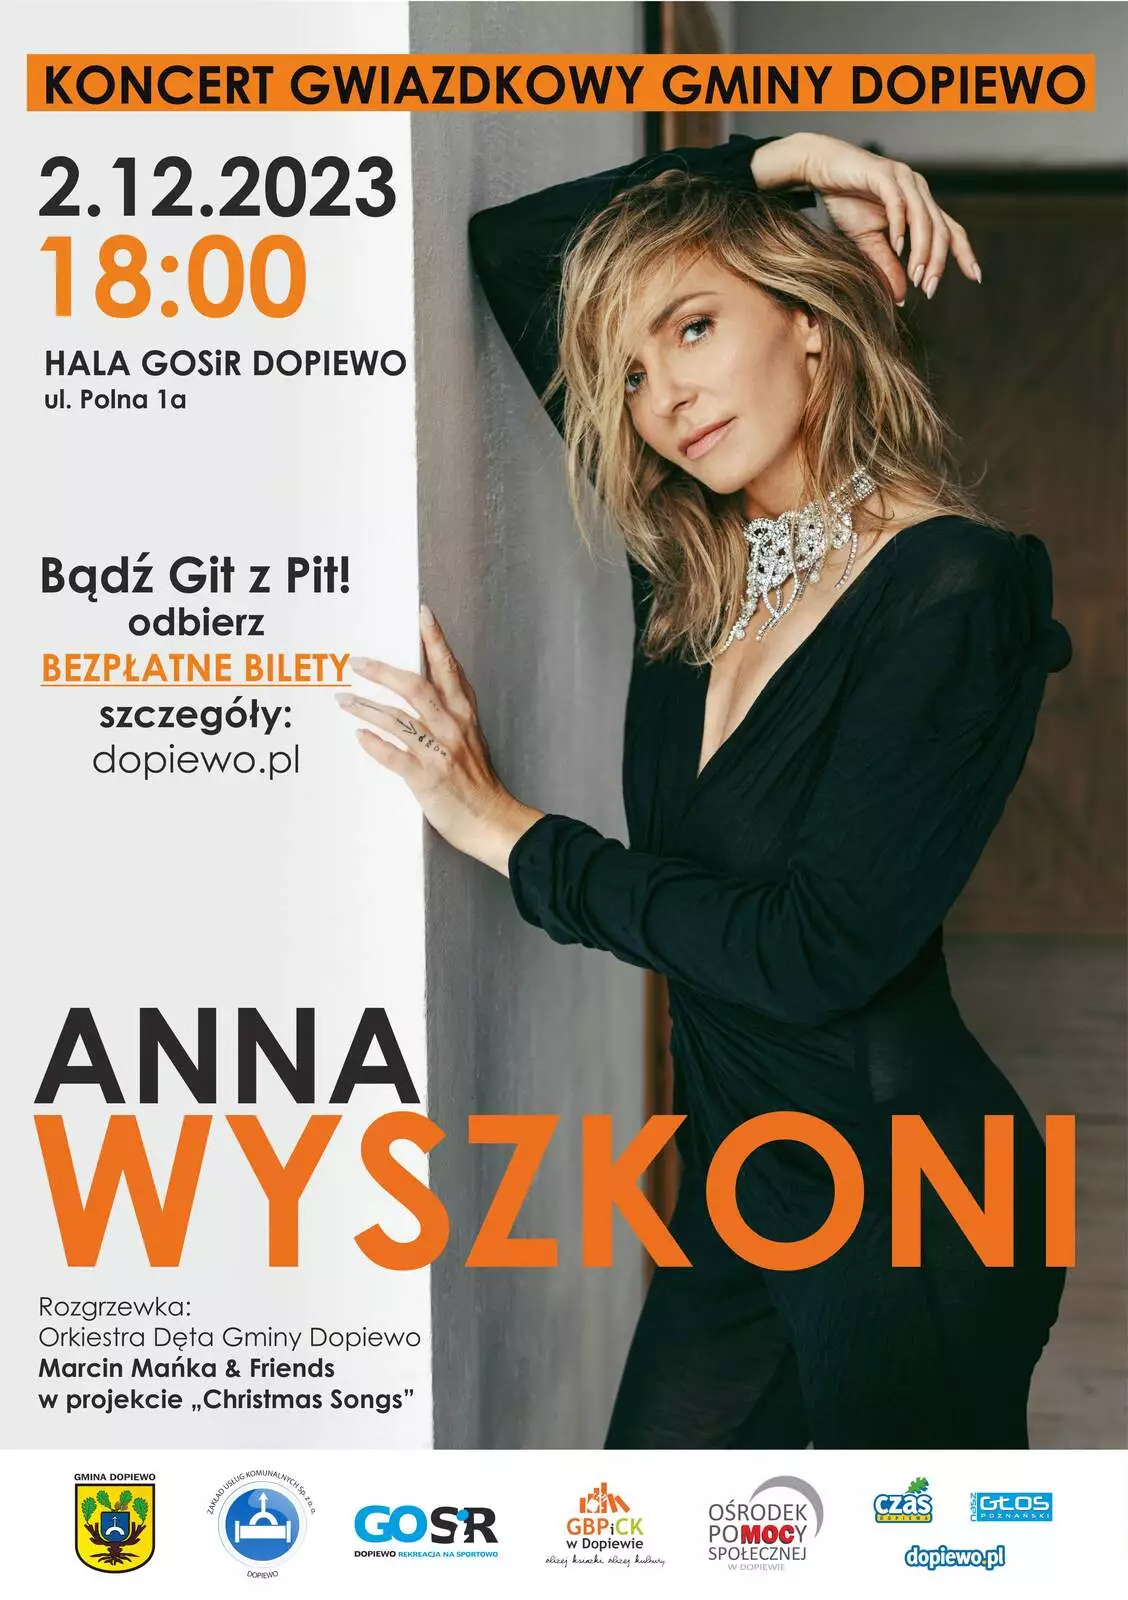 Plakat promujący Koncert Gwiazdkowy